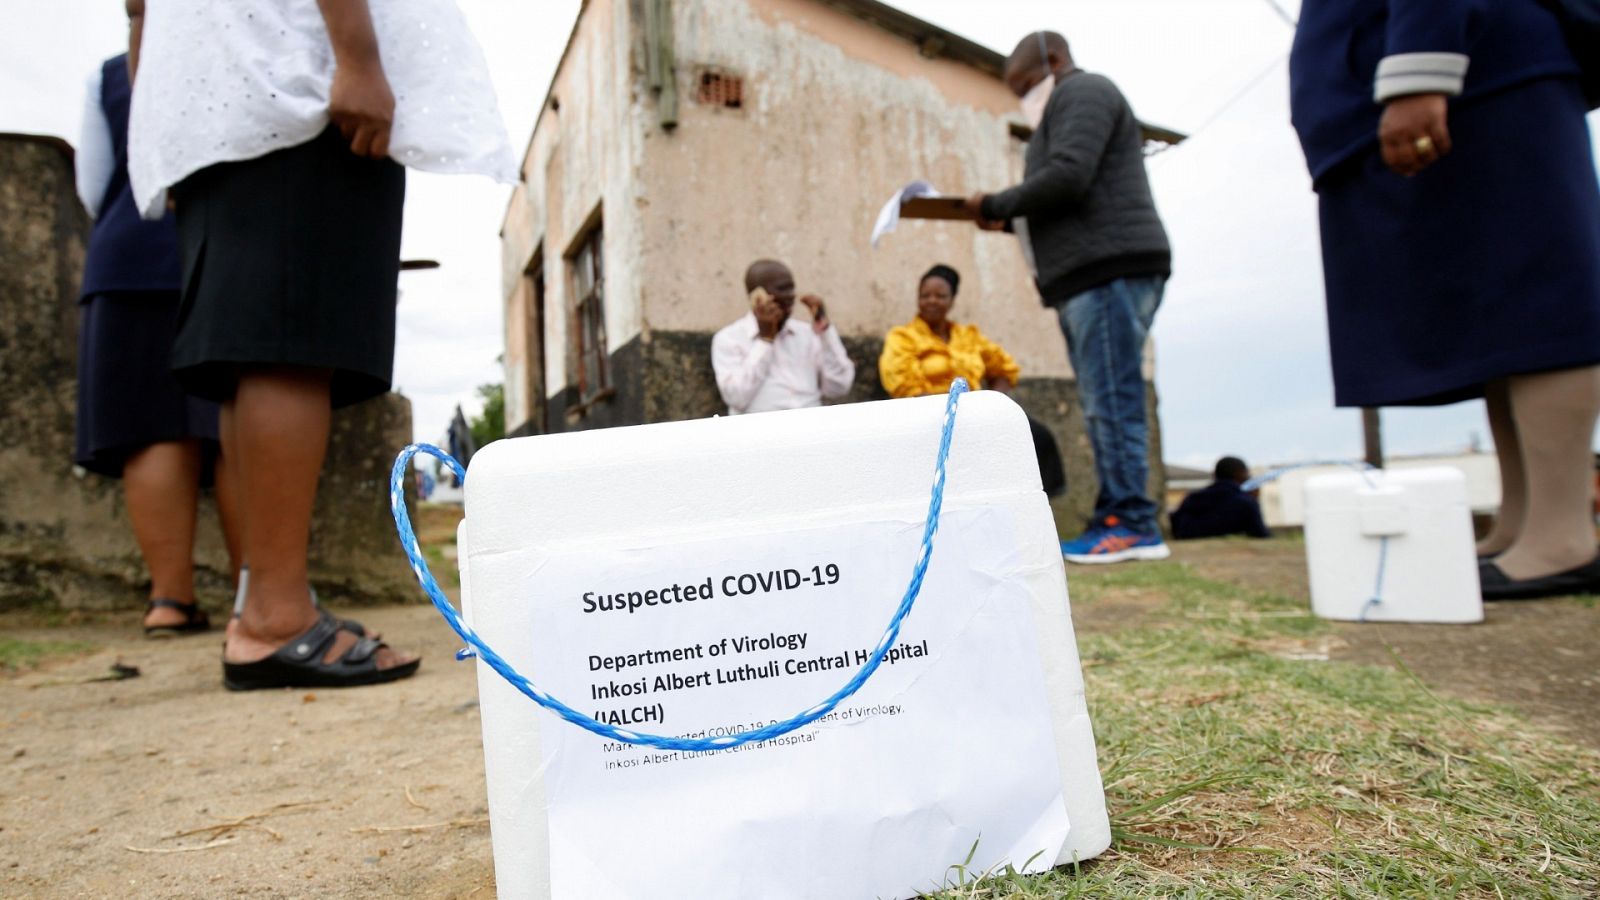  Sanitarios haciendo análisis del Covid-19 puerta a puerta en Suráfrica